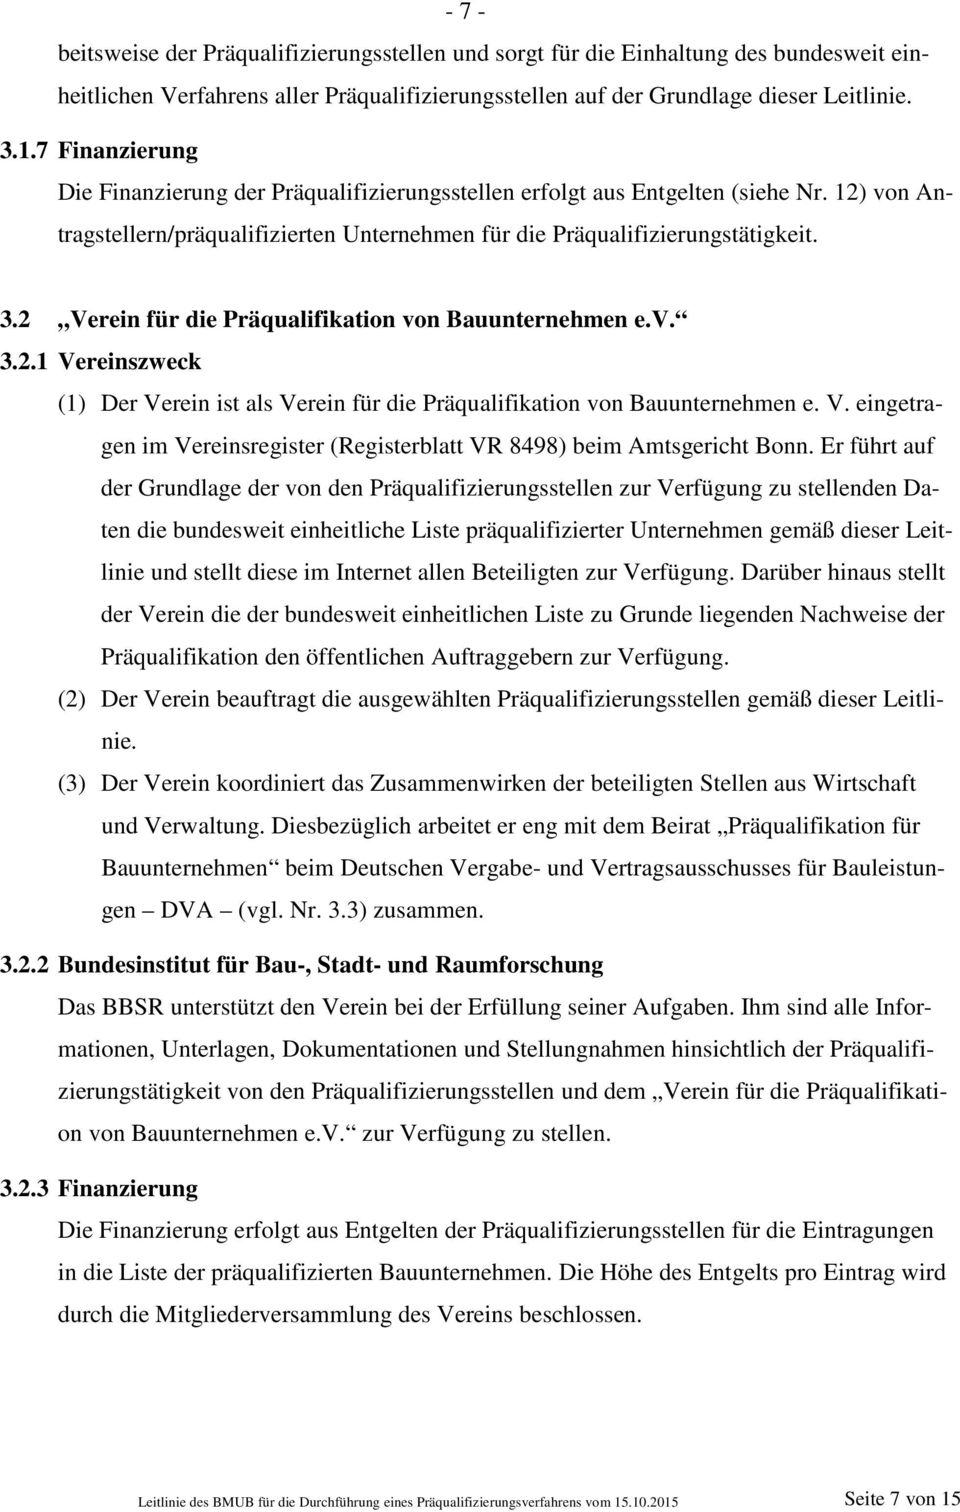 2 Verein für die Präqualifikation von Bauunternehmen e.v. 3.2.1 Vereinszweck (1) Der Verein ist als Verein für die Präqualifikation von Bauunternehmen e. V. eingetragen im Vereinsregister (Registerblatt VR 8498) beim Amtsgericht Bonn.